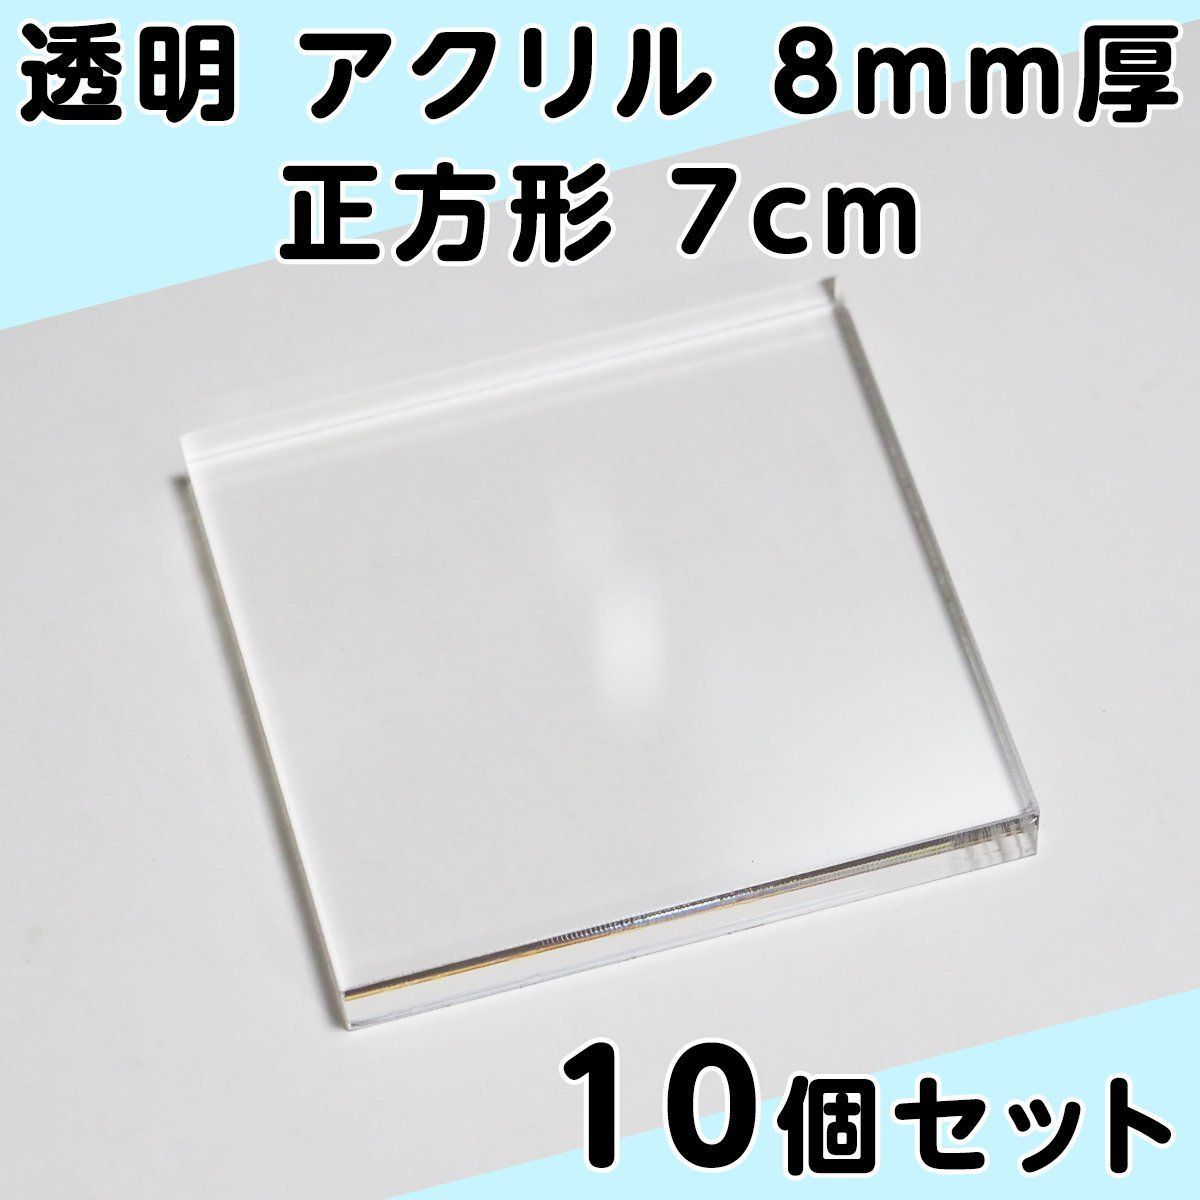 透明 アクリル 8mm厚 正方形 7cm 10個セット - メルカリ